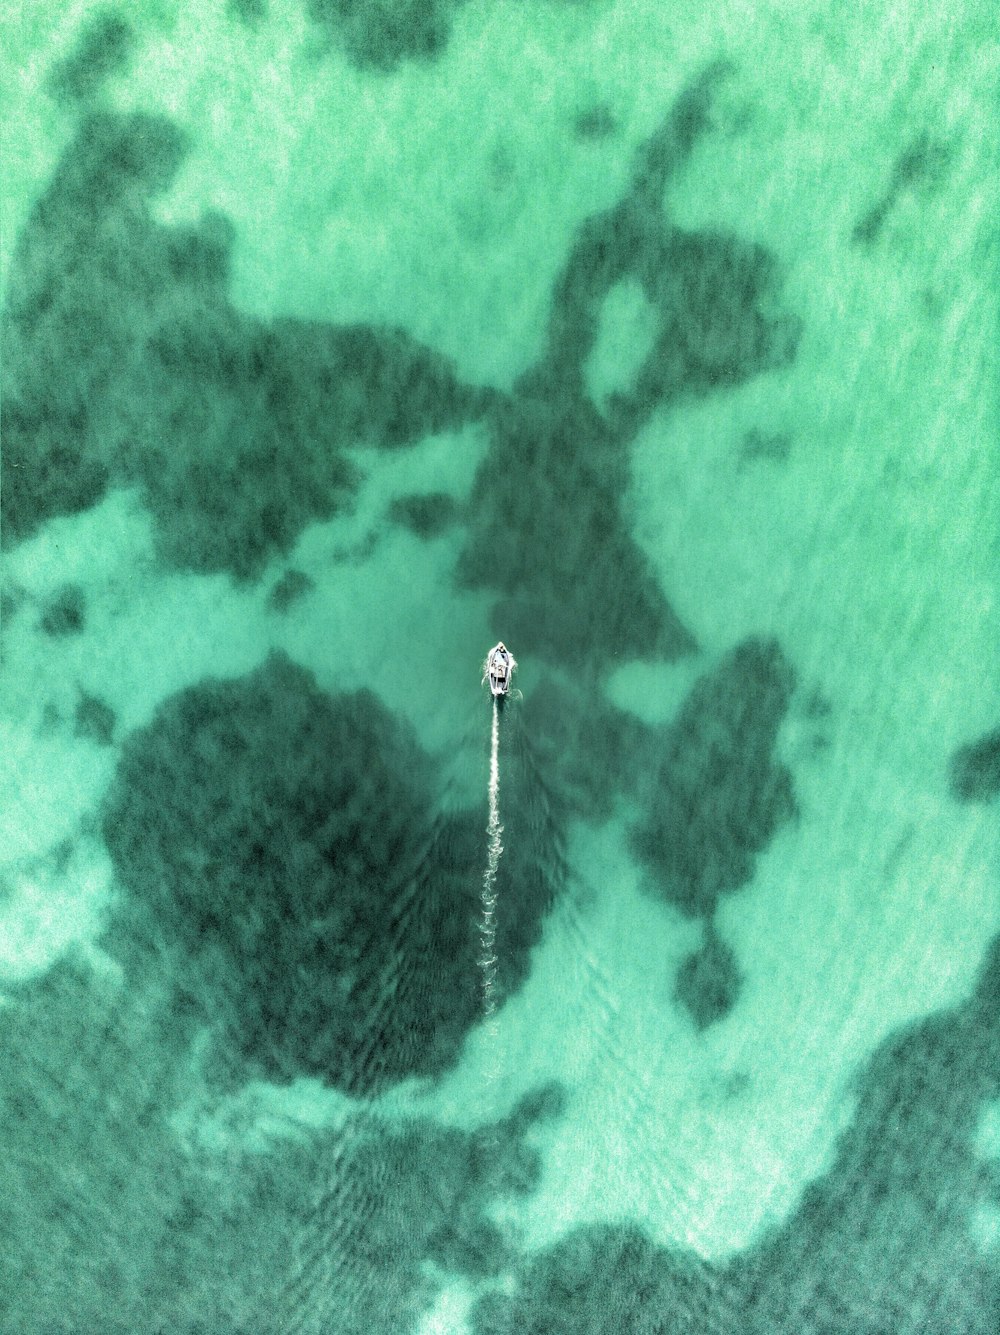 una veduta aerea di una barca nell'acqua